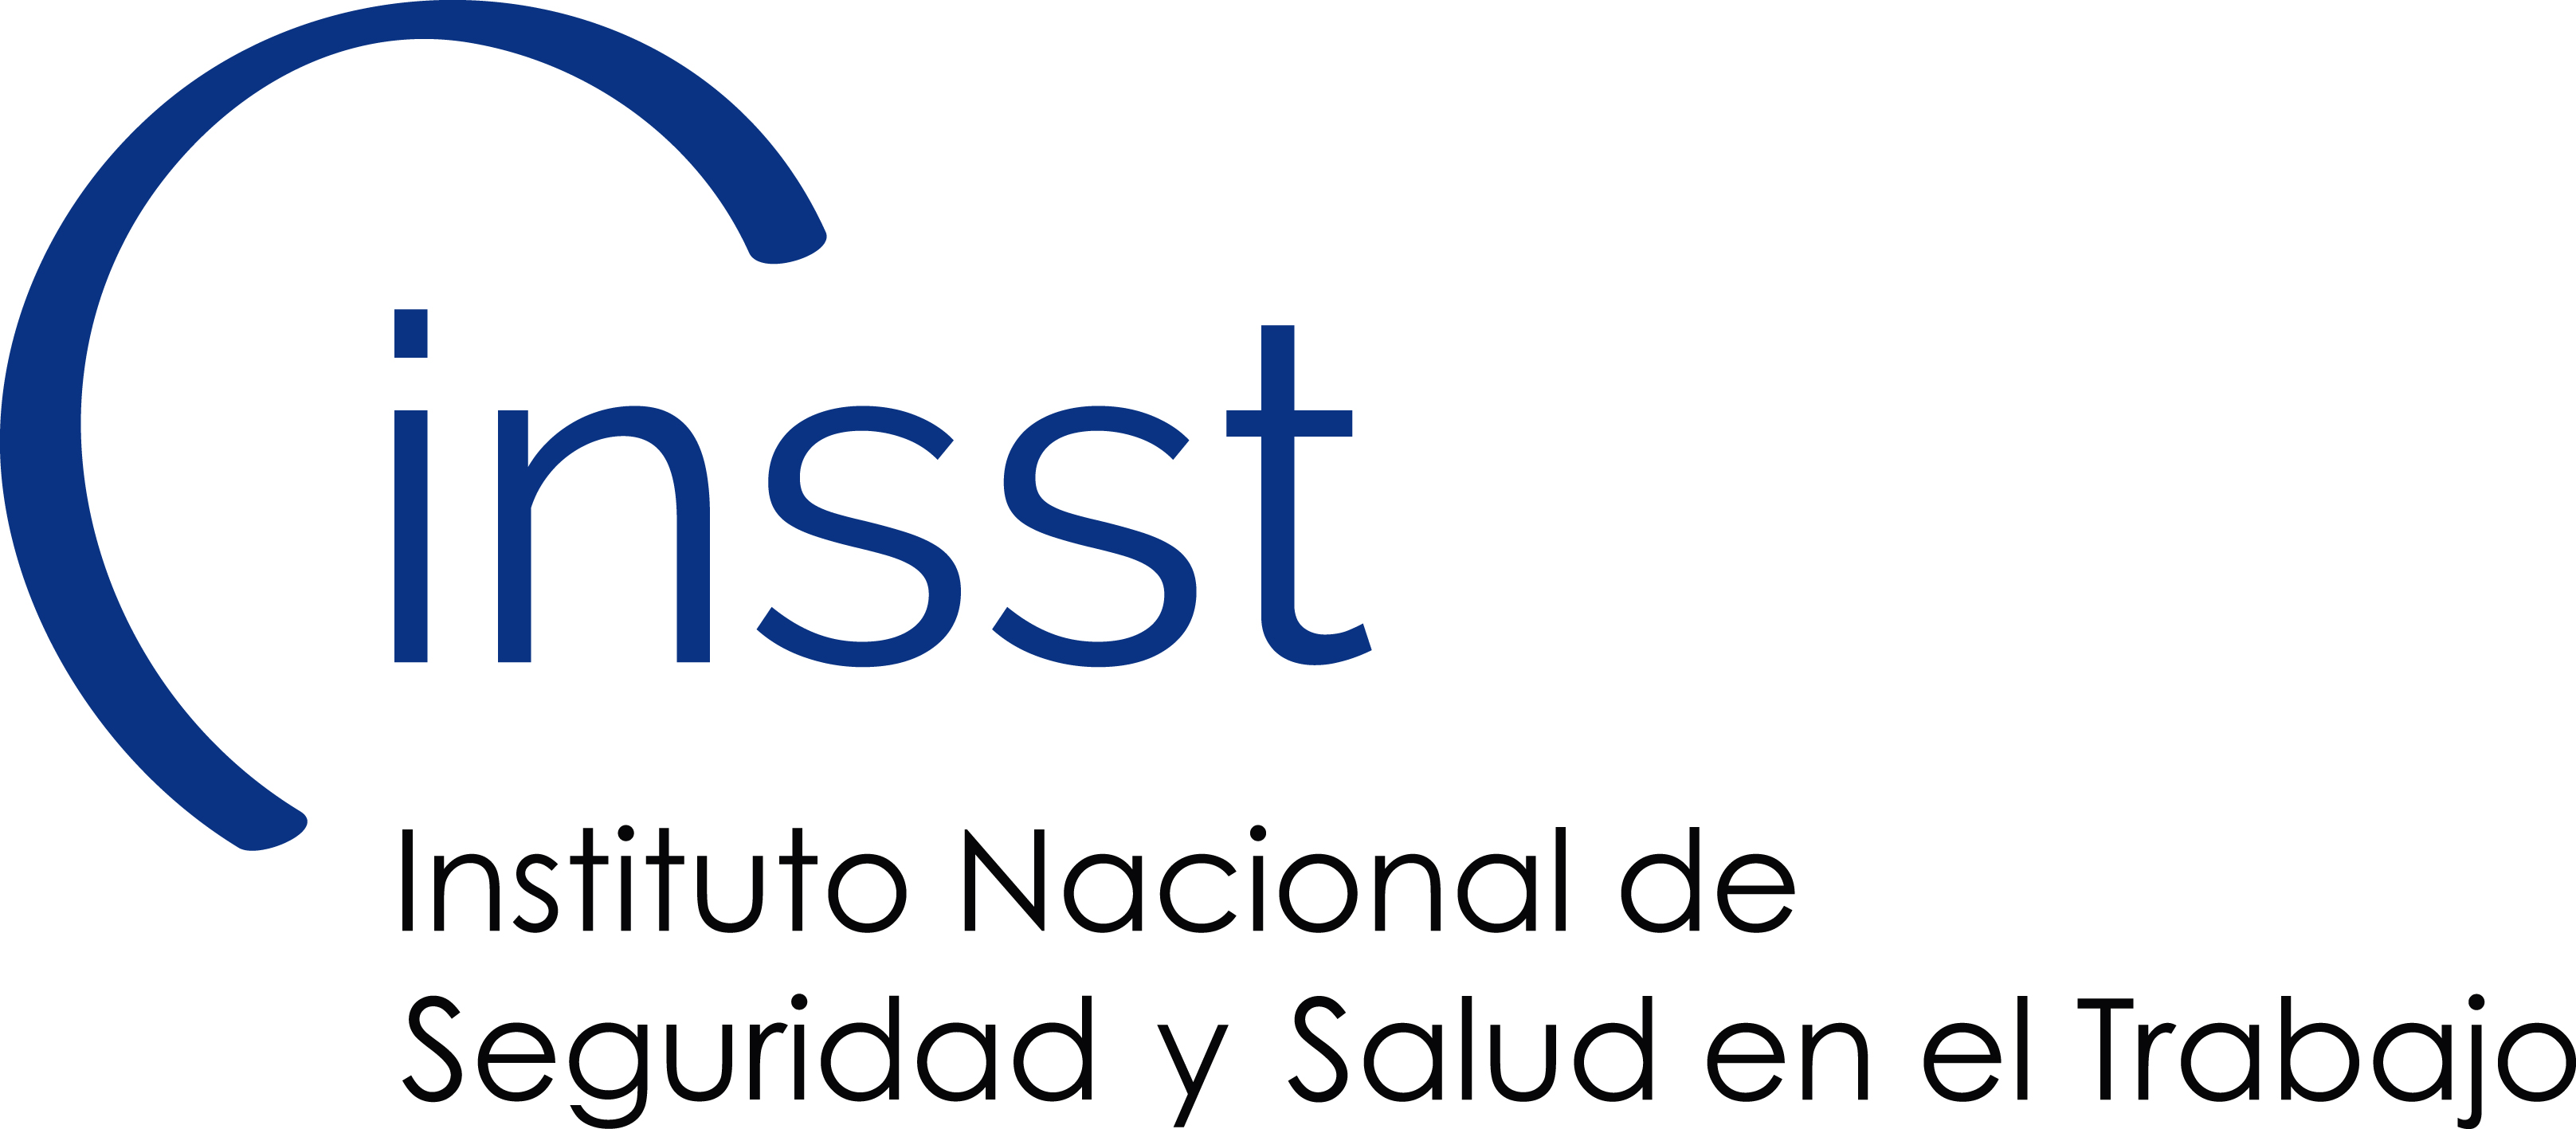 Instituto Nacional de Seguridad y Salud en el Trabajo (INSST)